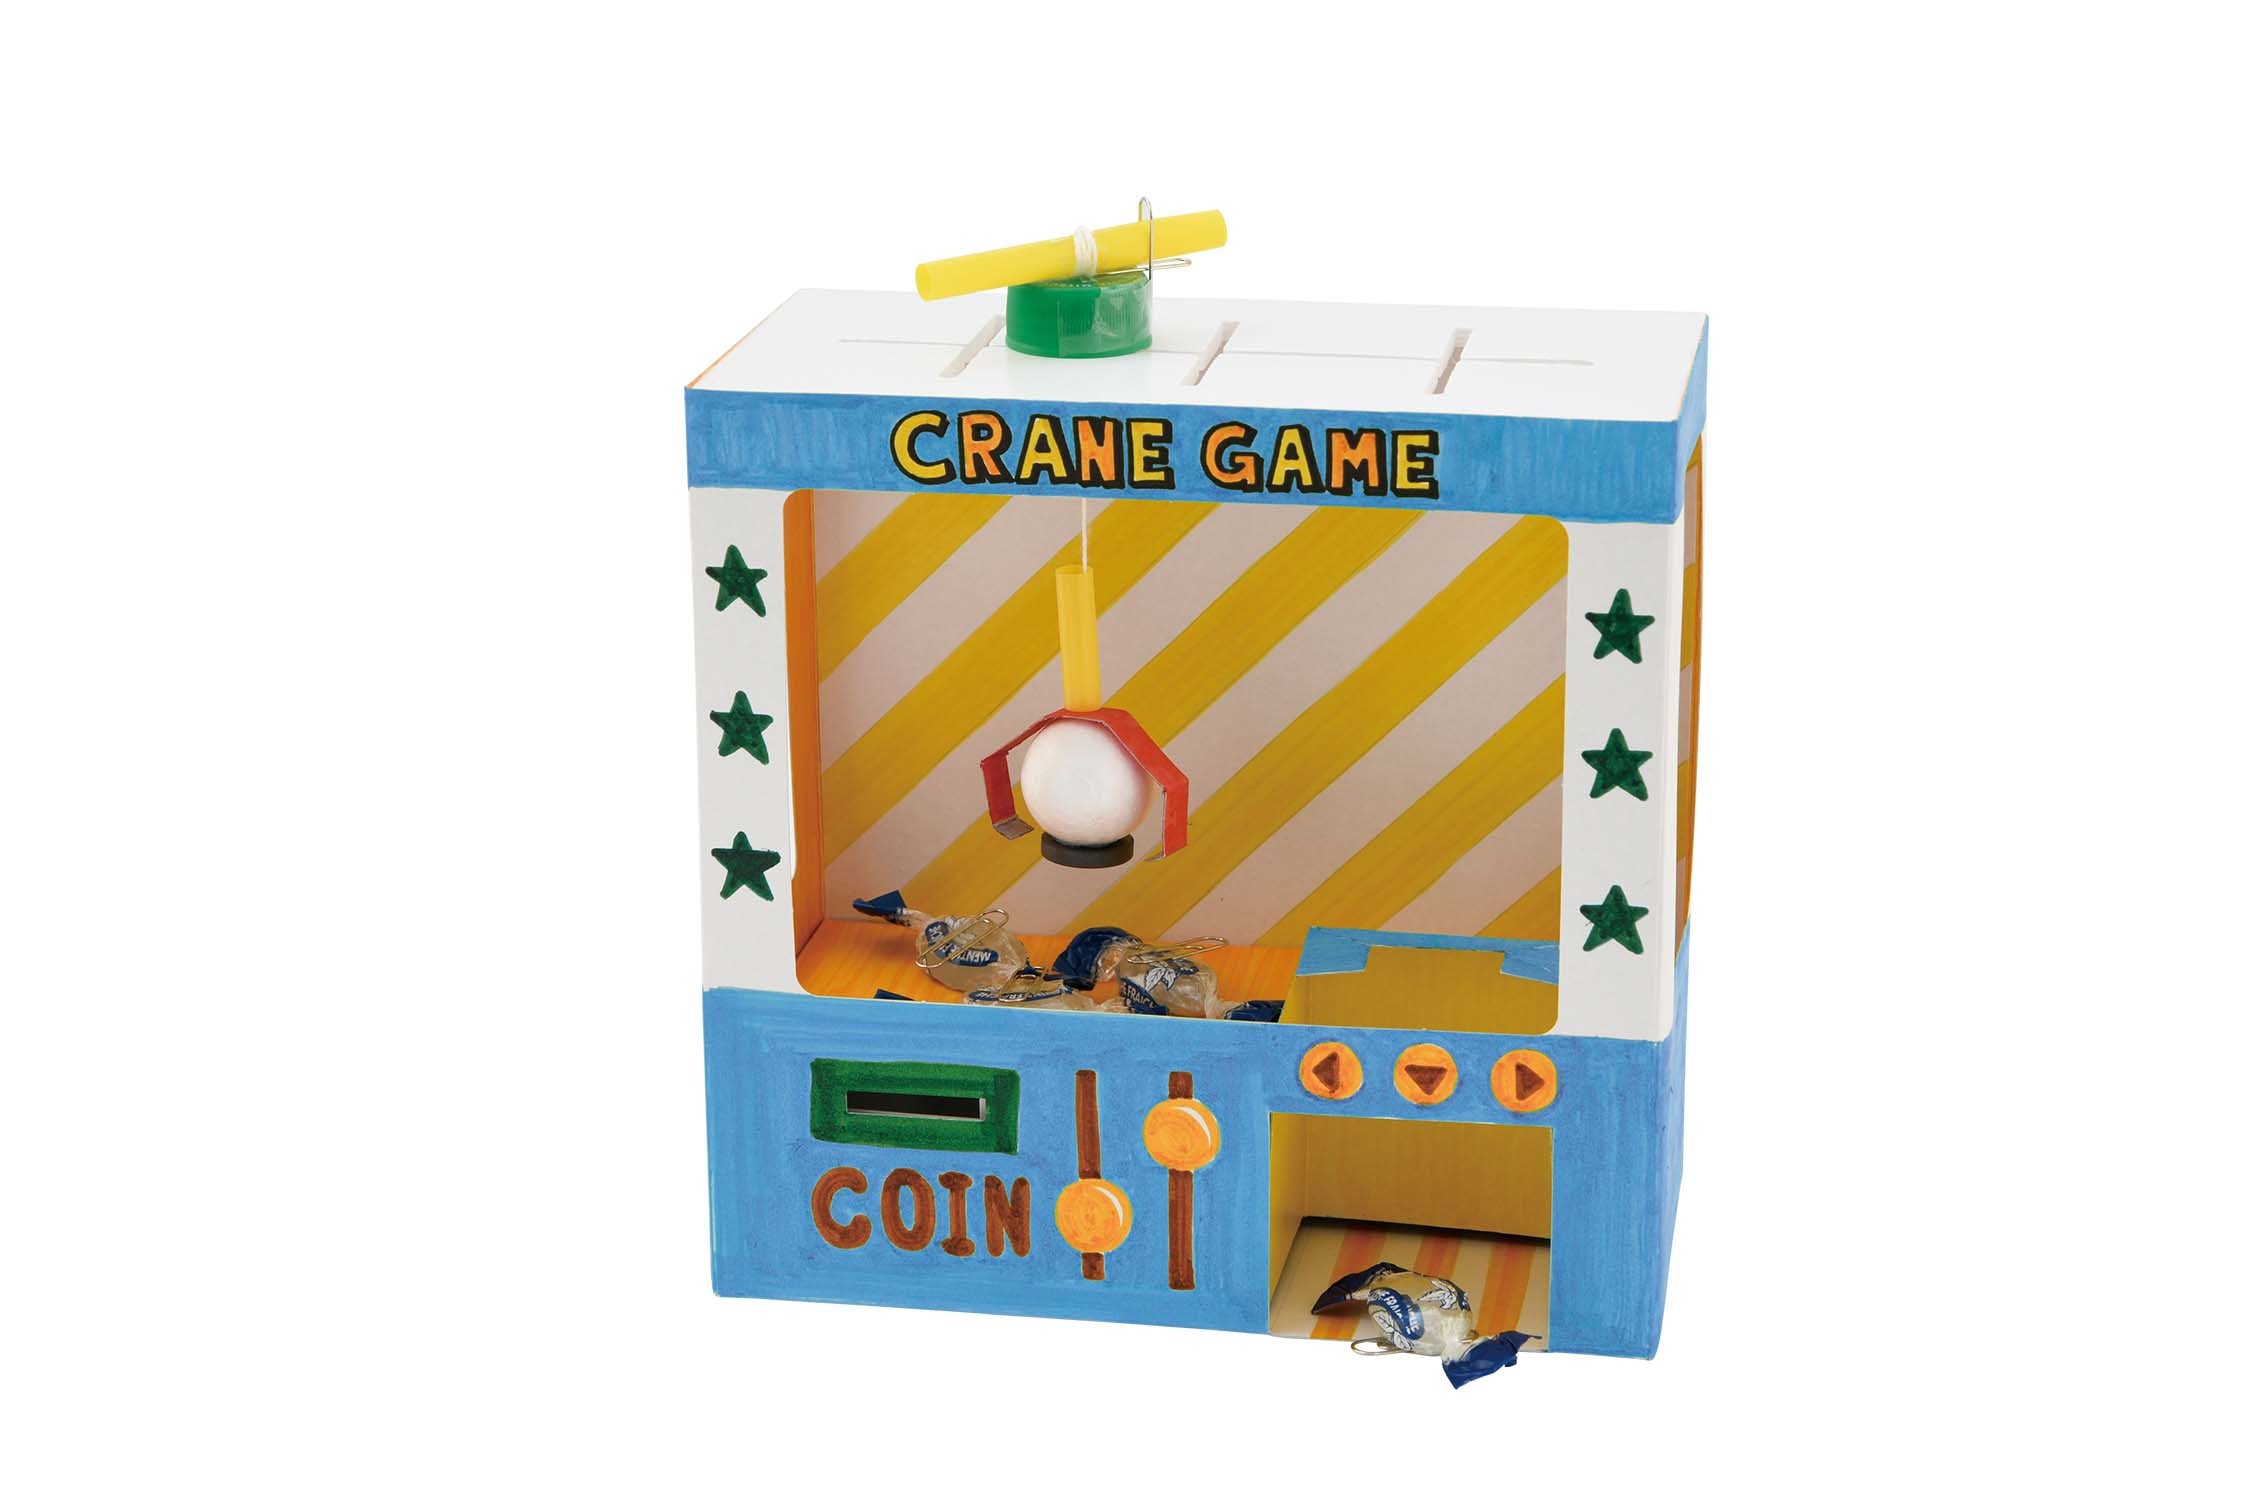 クレーンゲーム貯金箱キット 新装版 | 本の情報 | ブティック社